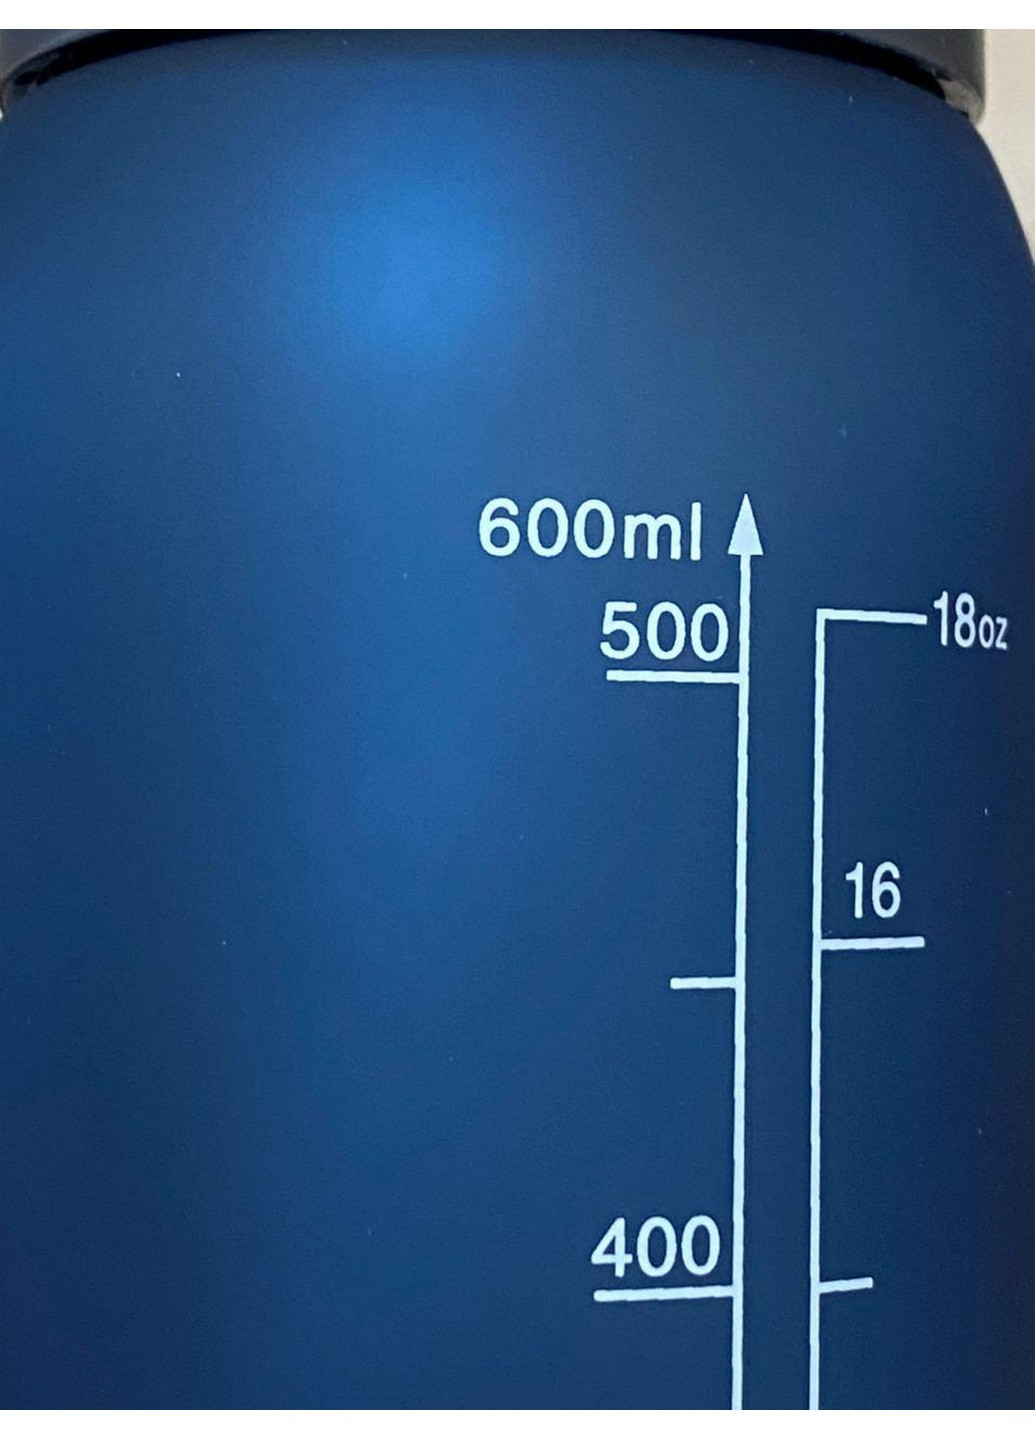 Бутылка для воды спортивная 600 мл. Casno (253063364)